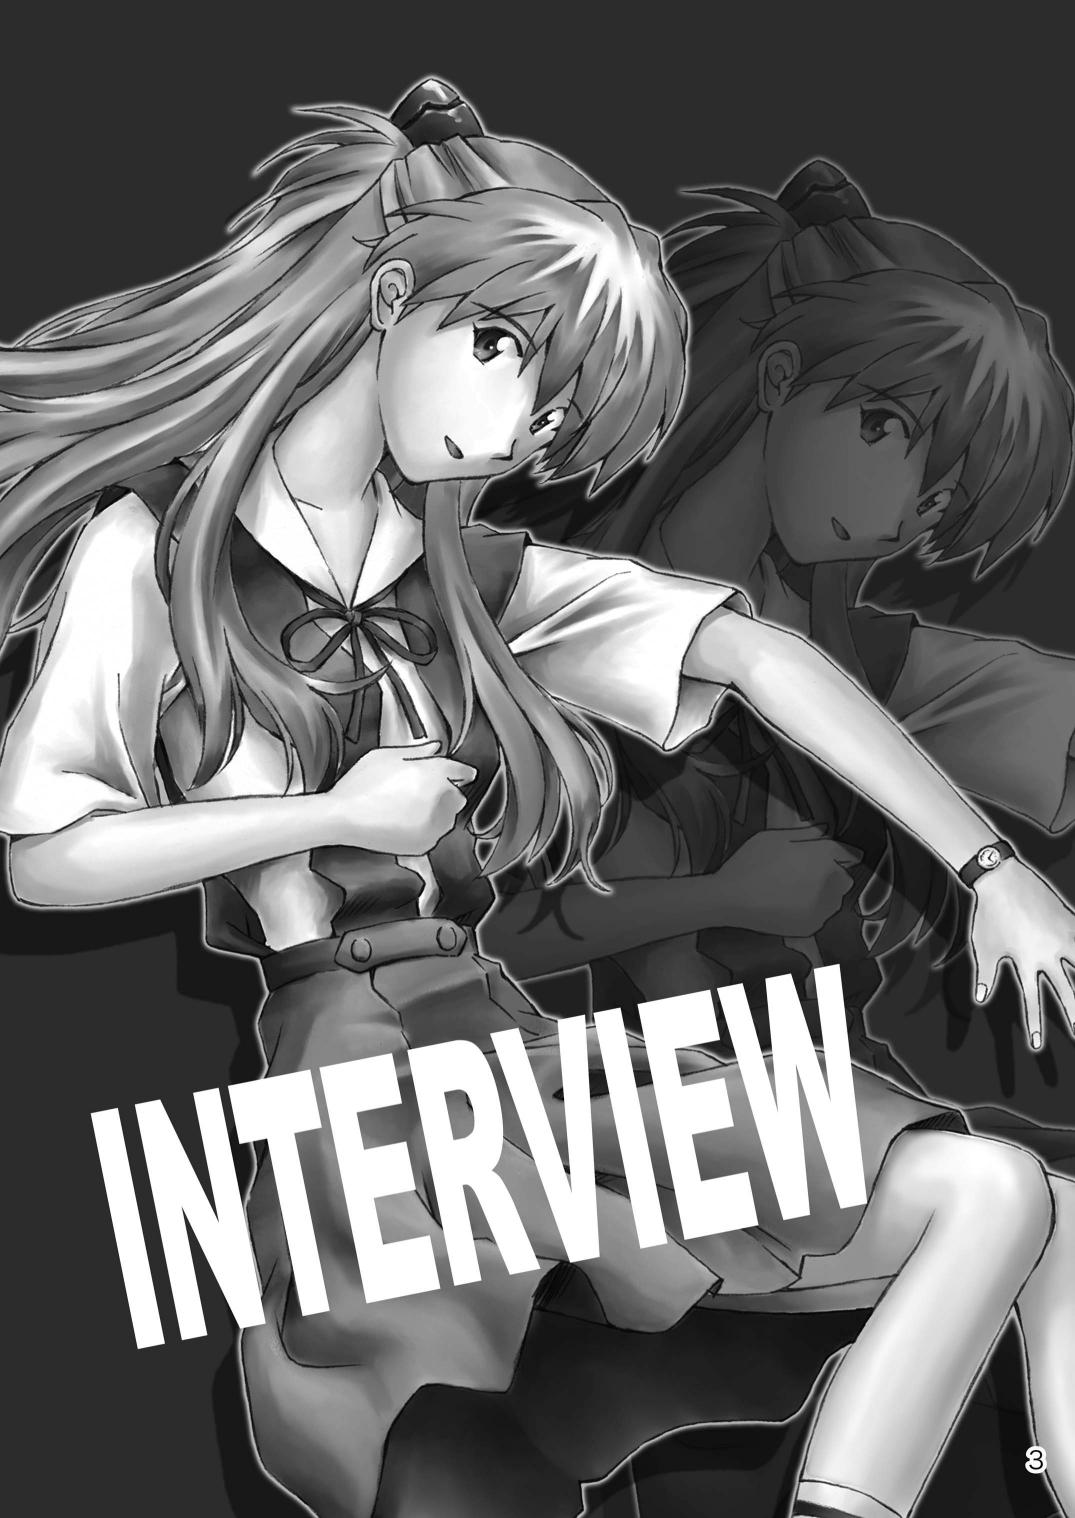 INTERVIEW 1